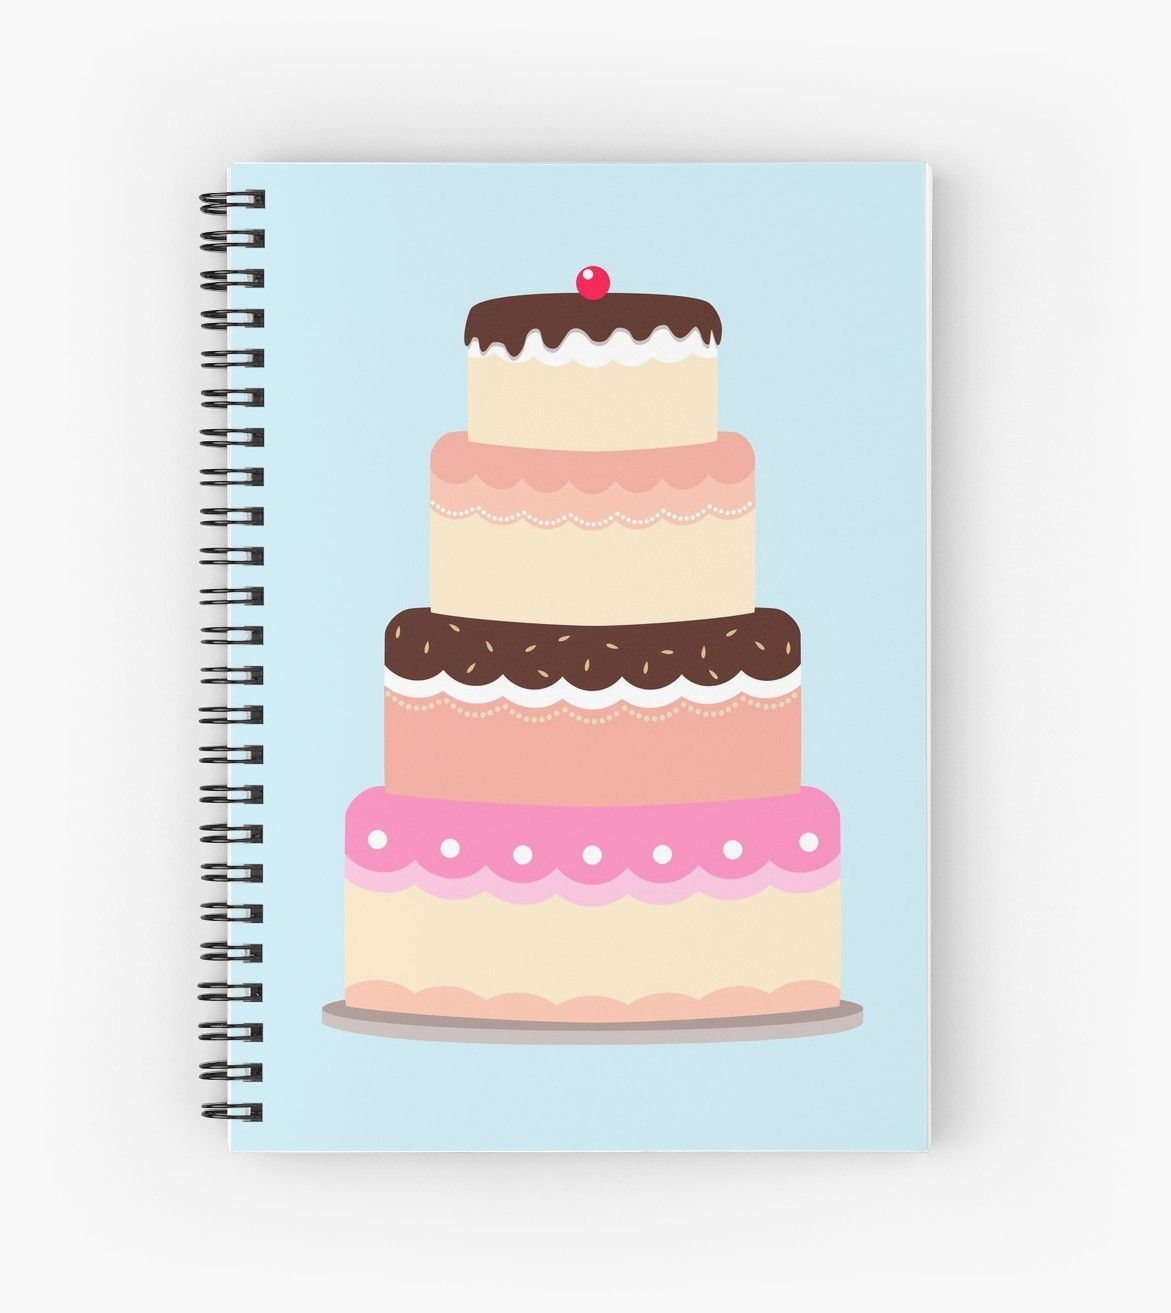 9 cake Illustration background ideas